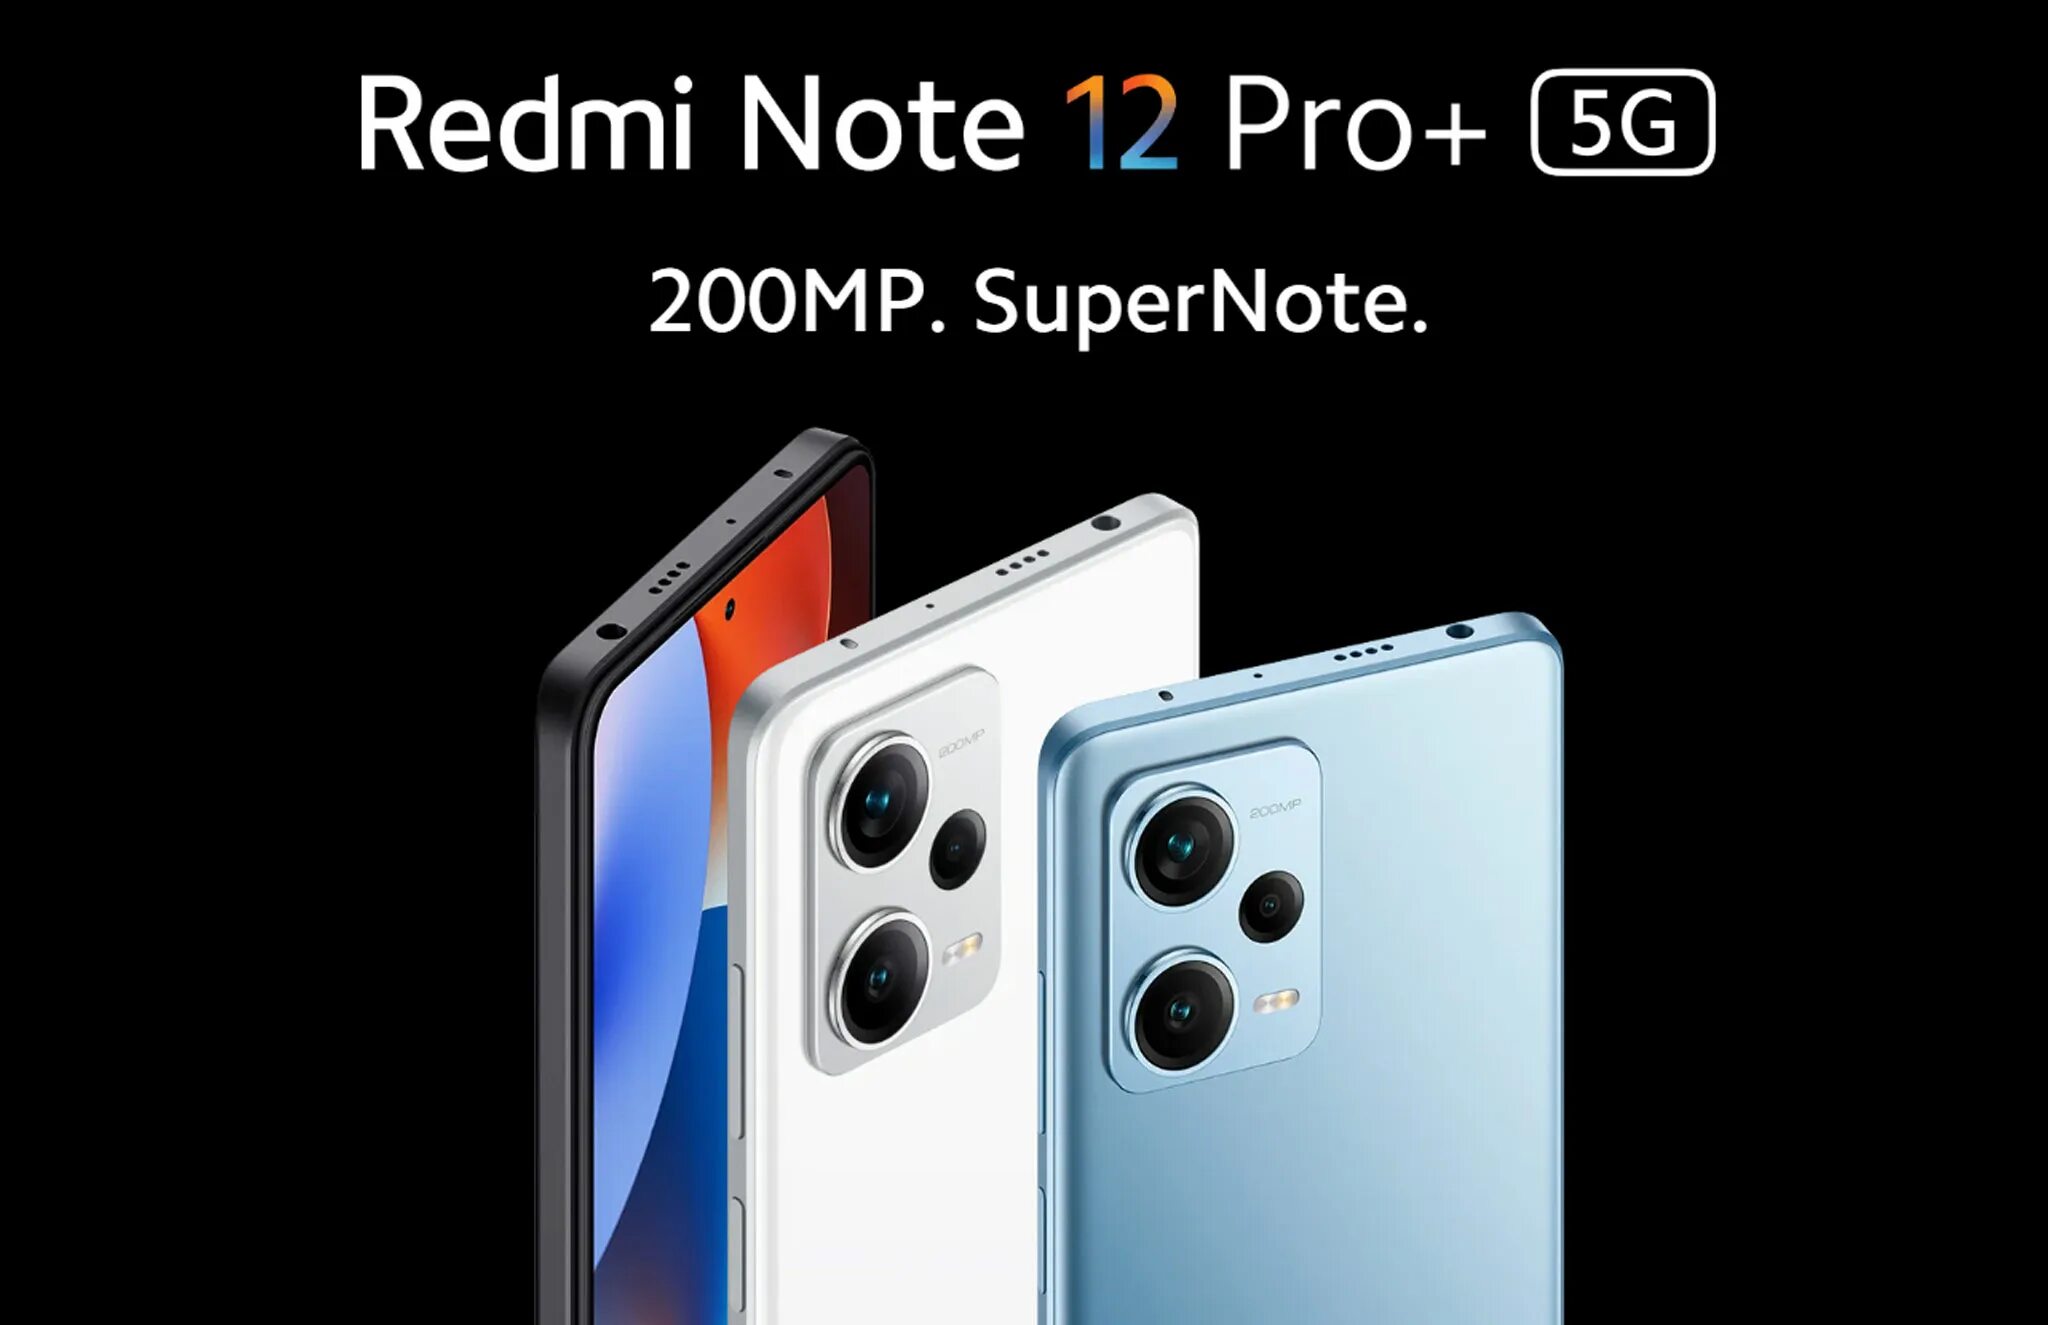 Redmi note 12 pro 5g midnight black. Redmi Note 12 Pro Plus. Redmi Note 12 Pro Китай. Redmi Note 12 Note Pro. Note 12 Pro 5g India.